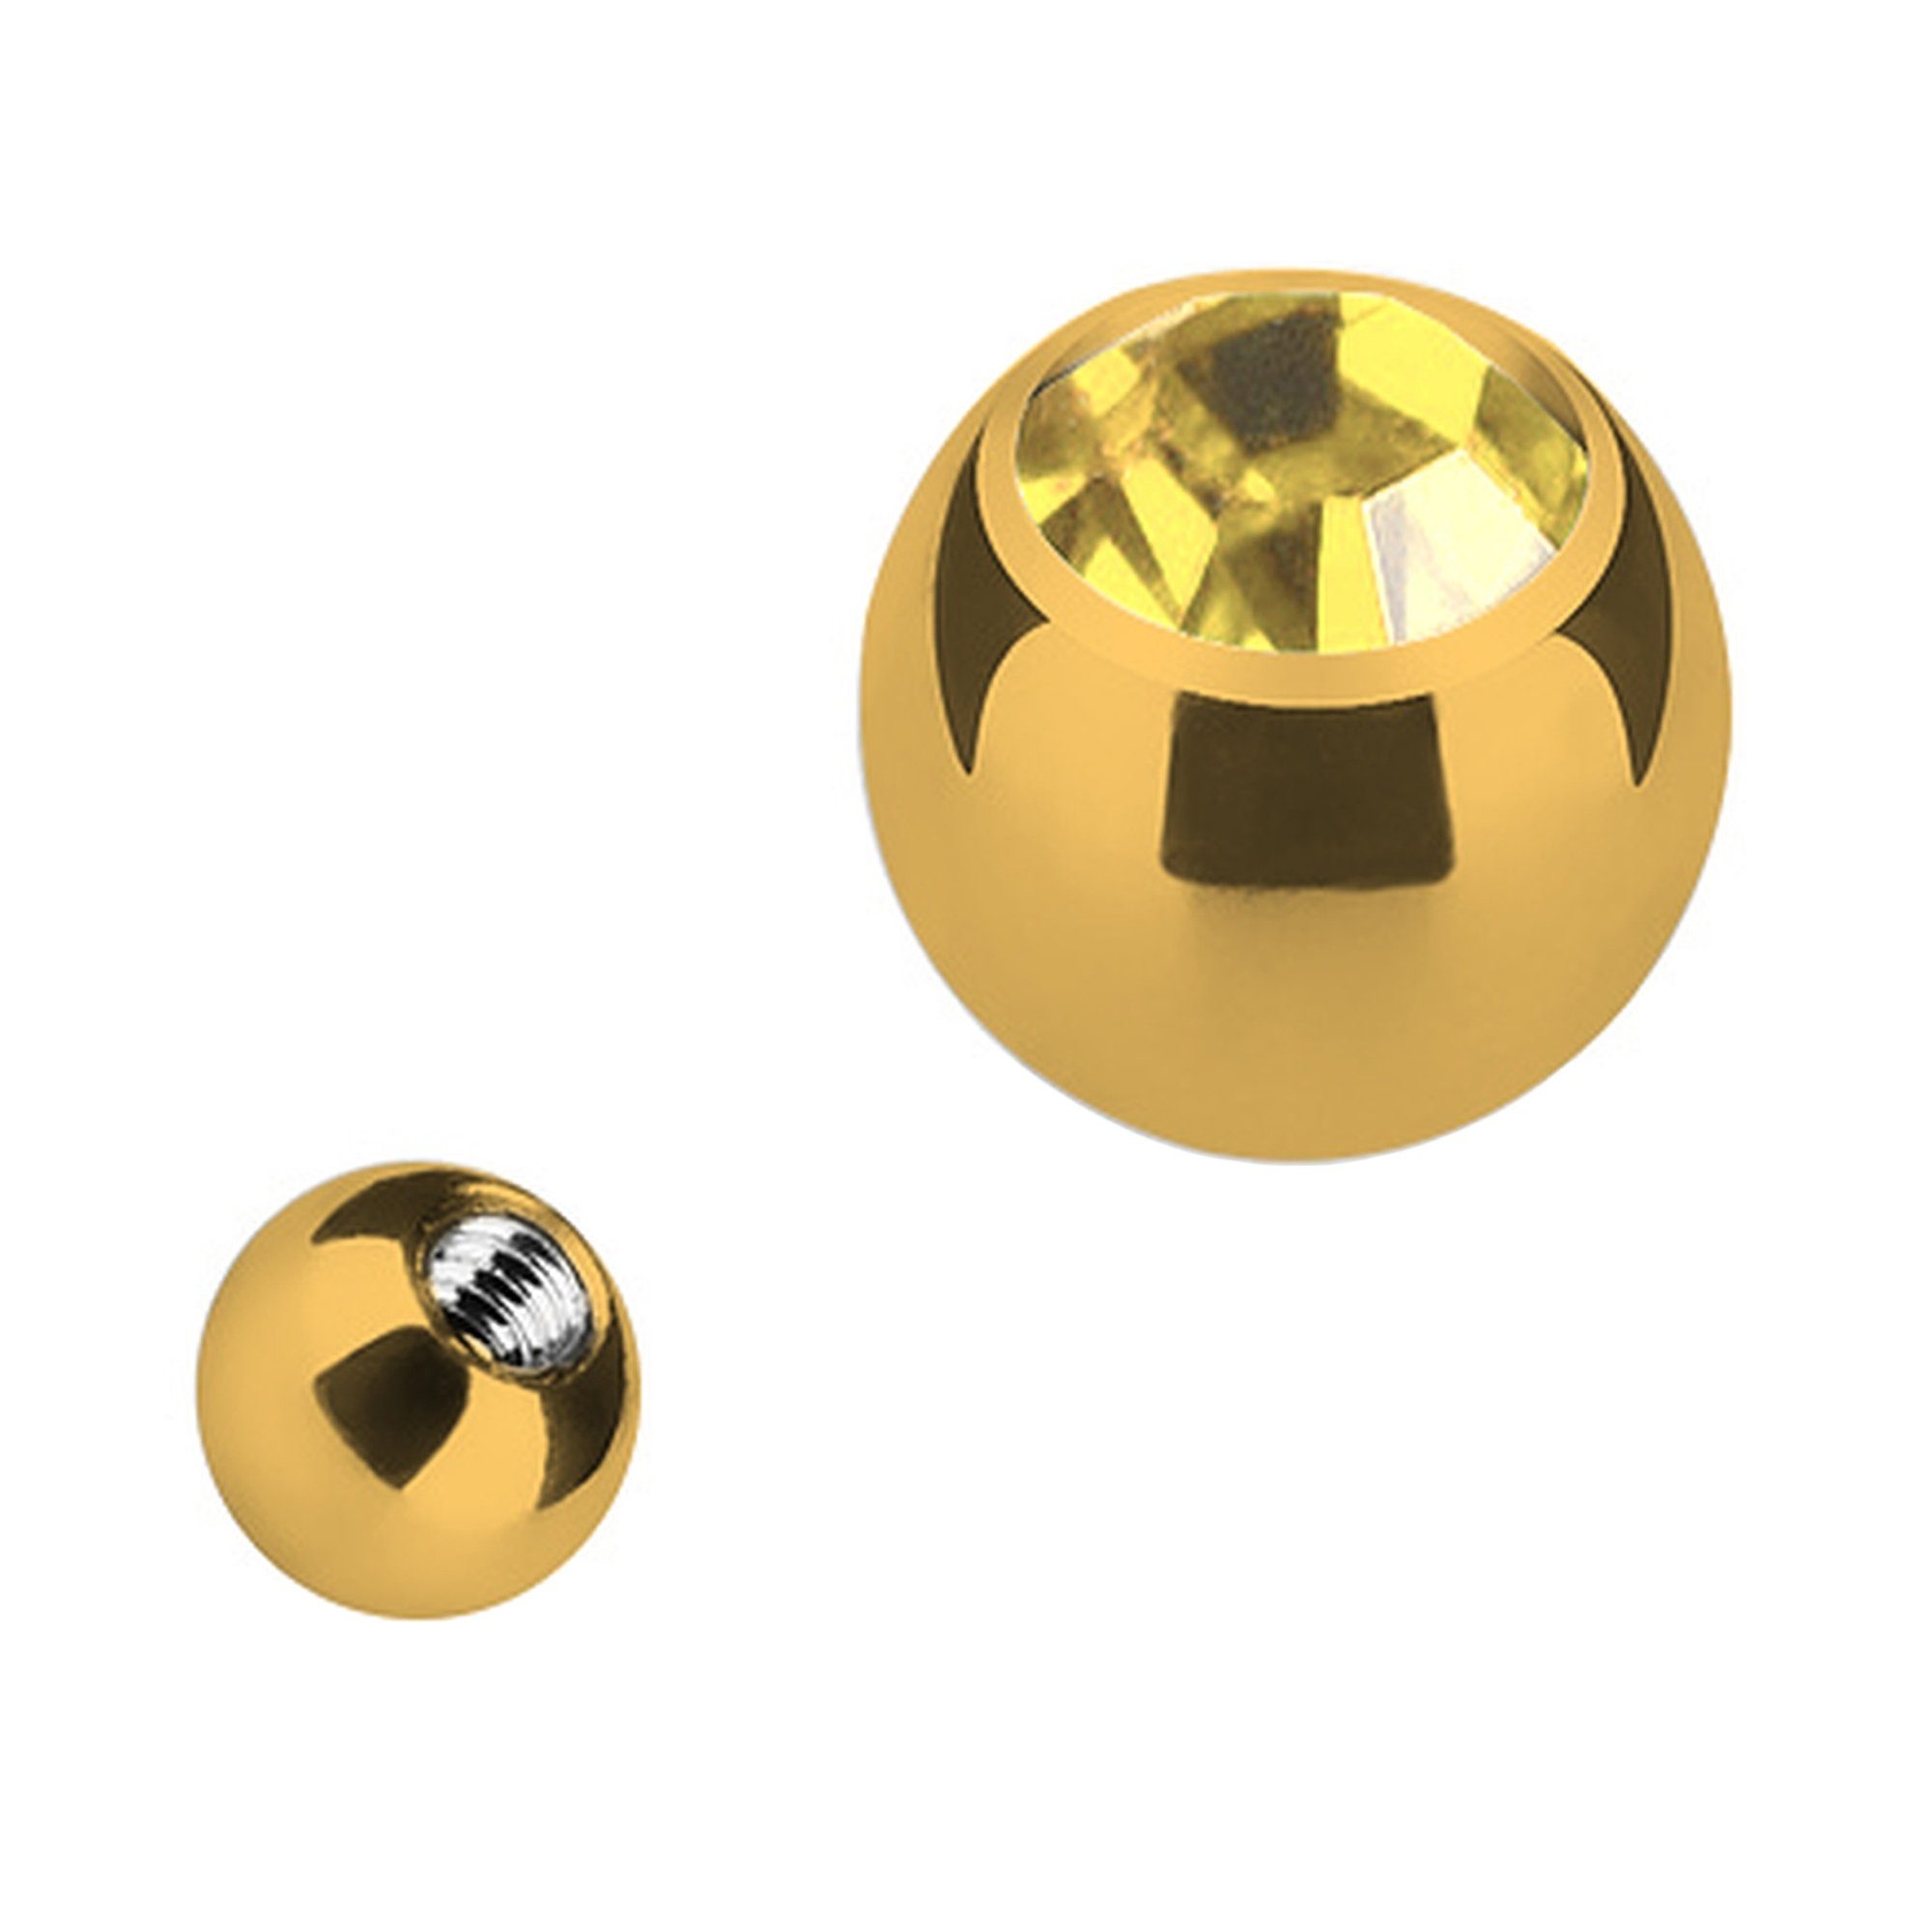 Taffstyle Piercing-Set Piercing Ersatz Verschluss mit Strass Kristall, Gold Schraubkugel Verschlusskugel Ersatzteile Edelstahl Gold mit Kugel